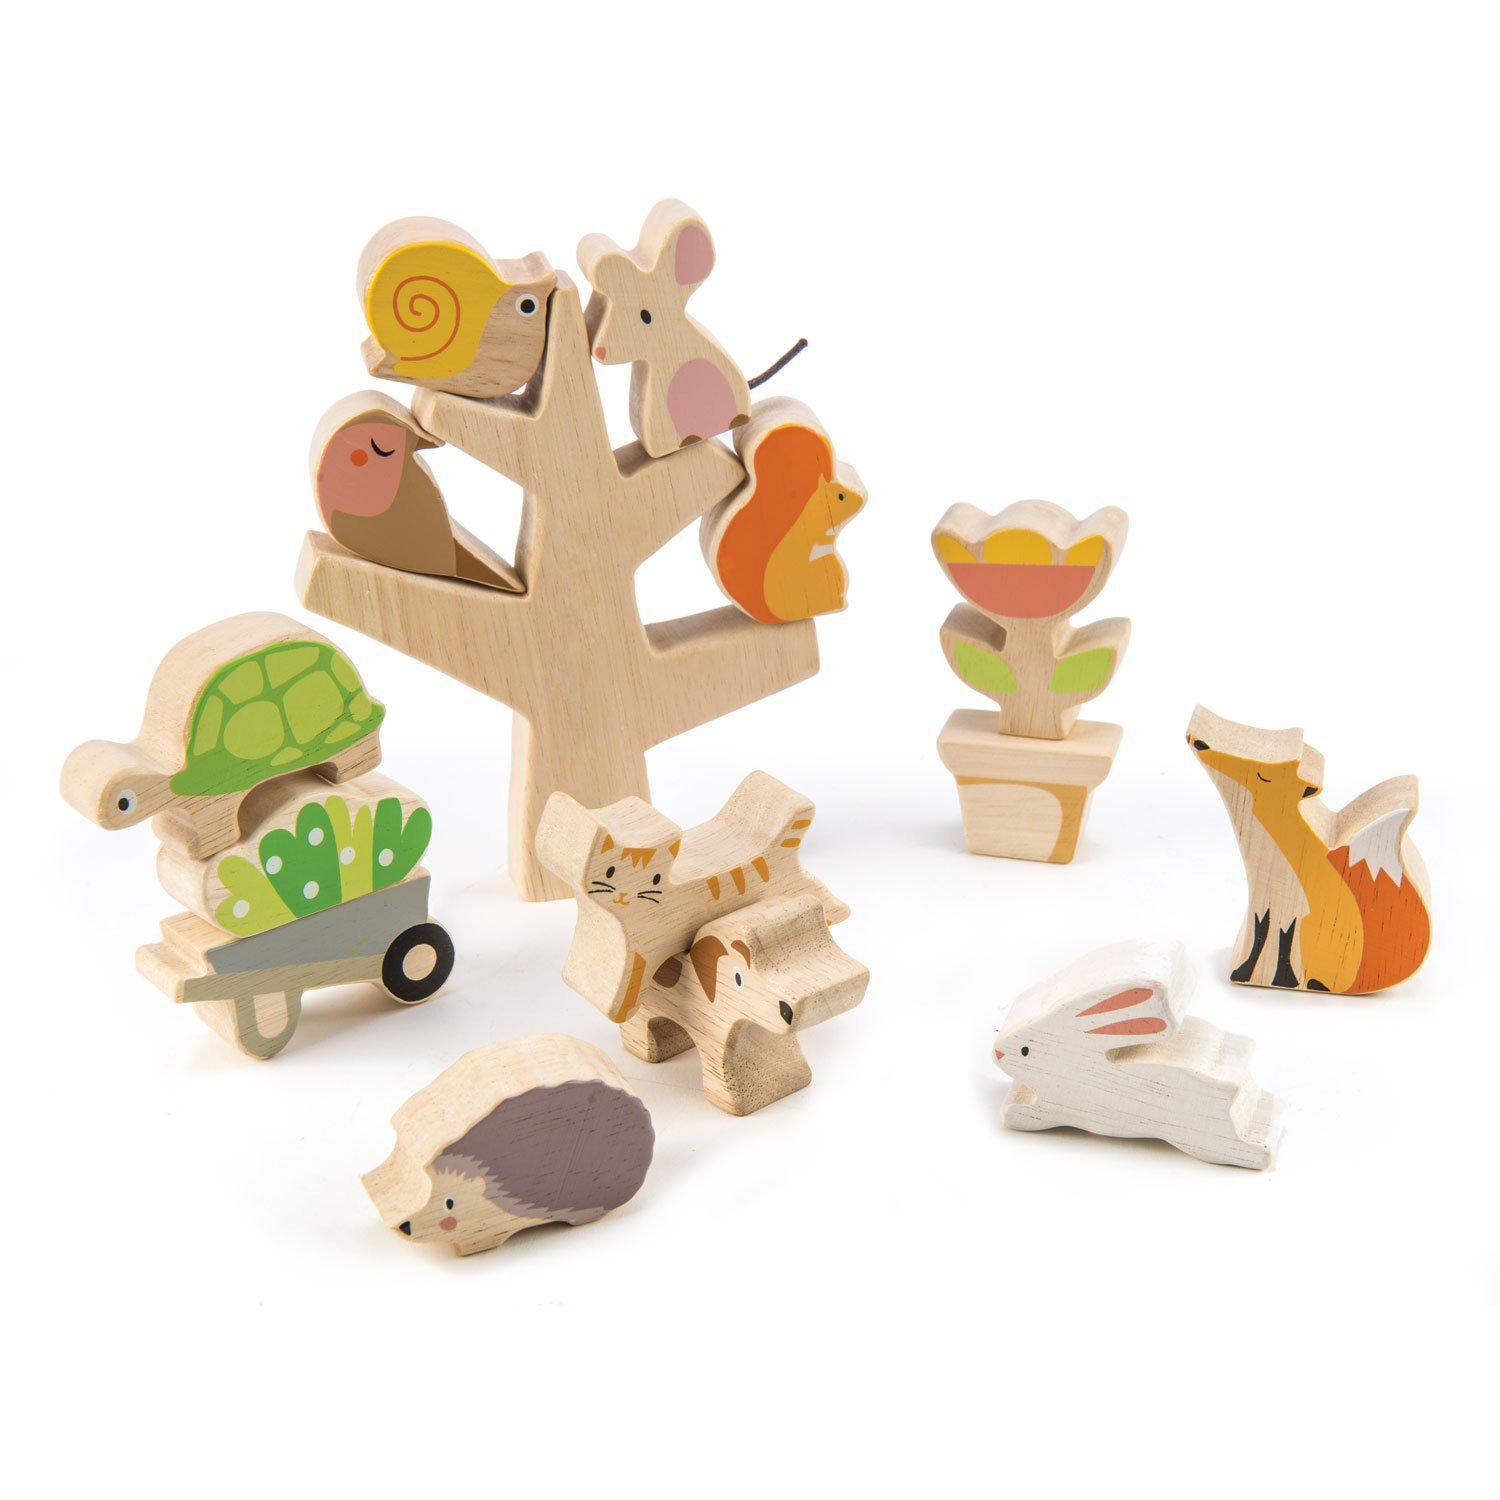 Fán lakó állatok, prémium minőségű fából - Stacking Garden Friends - 16 darab - Tender Leaf Toys-Tender Leaf Toys-3-Játszma.ro - A maradandó élmények boltja